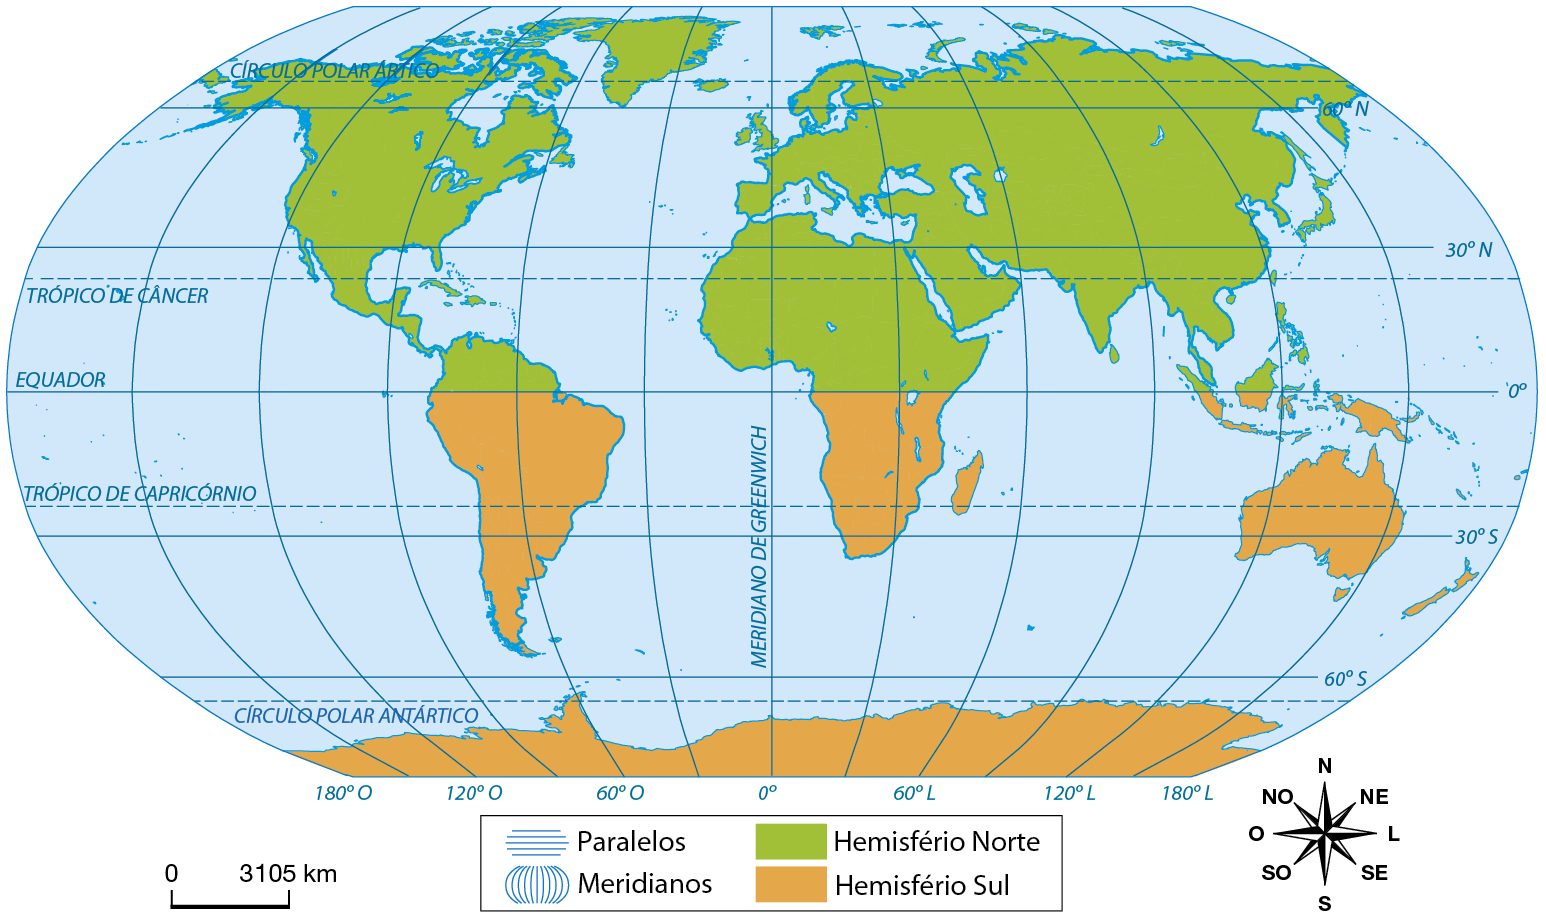 Mapa. Planisfério: Hemisférios Norte e Sul. A legenda evidencia os elementos gráficos dos paralelos e meridianos, além de dividir o mapa em Hemisfério Norte, em verde, e Hemisfério Sul, em laranja. O Círculo Polar Ártico, Trópico de Câncer, Equador, Trópico de Capricórnio e Círculo Polar Antártico cortam horizontalmente o Planisfério. Já ao centro está o Meridiano de Greenwich, dividindo o globo verticalmente. Abaixo está a escala de 0 a 3.105 quilômetros e a rosa dos ventos.